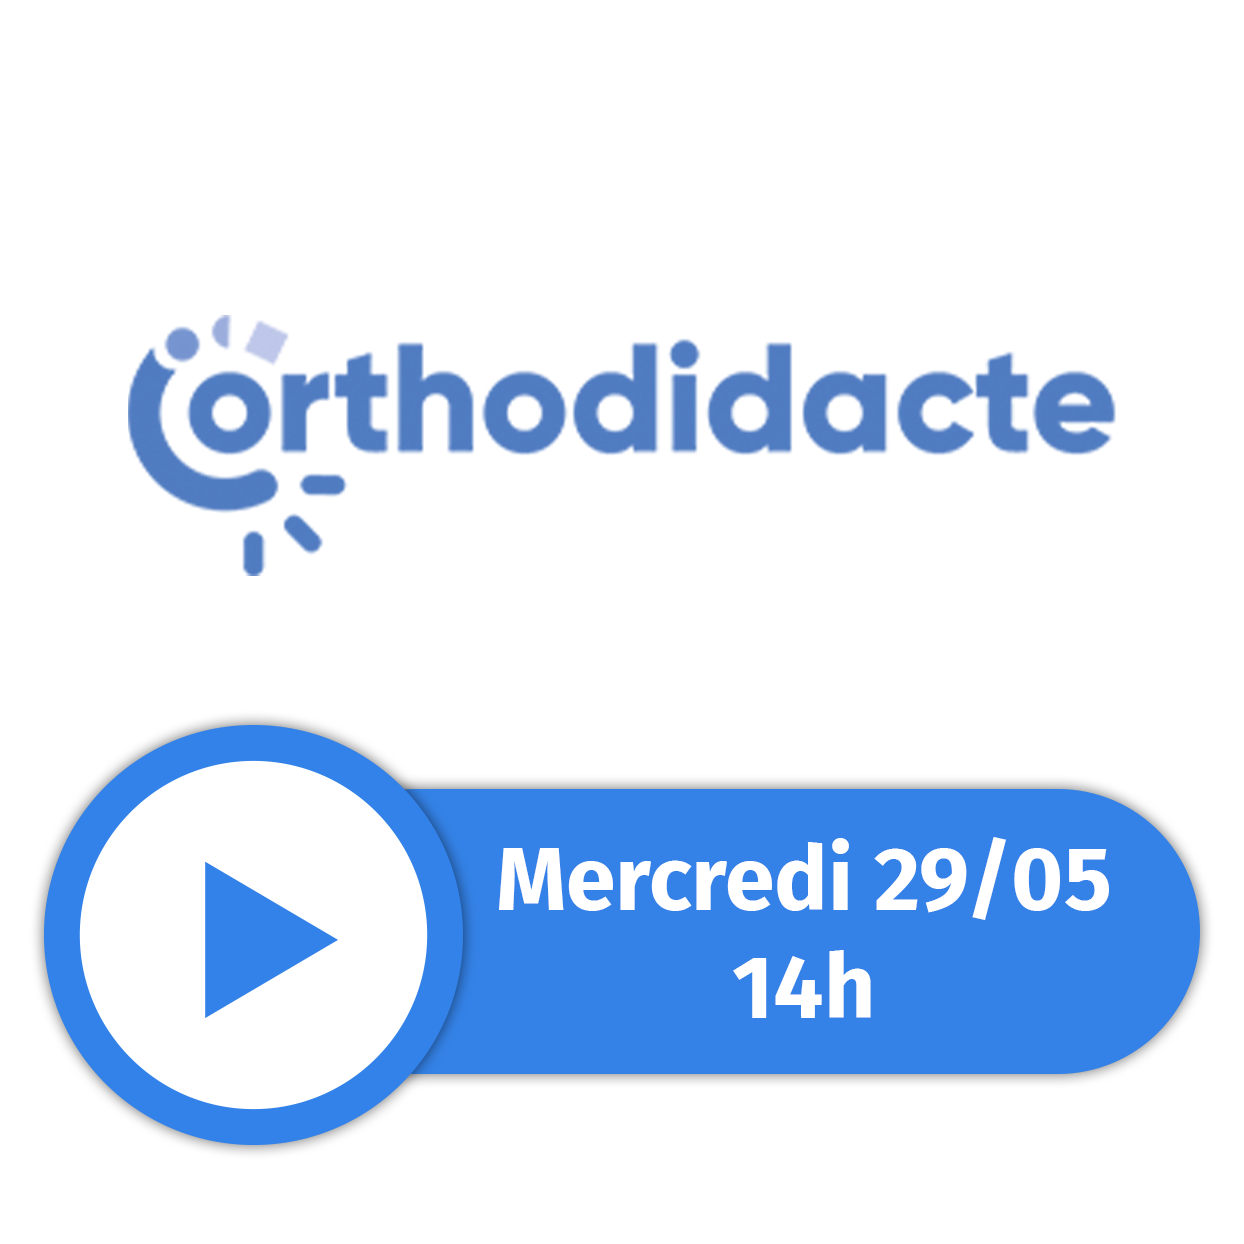 Orthodidacte